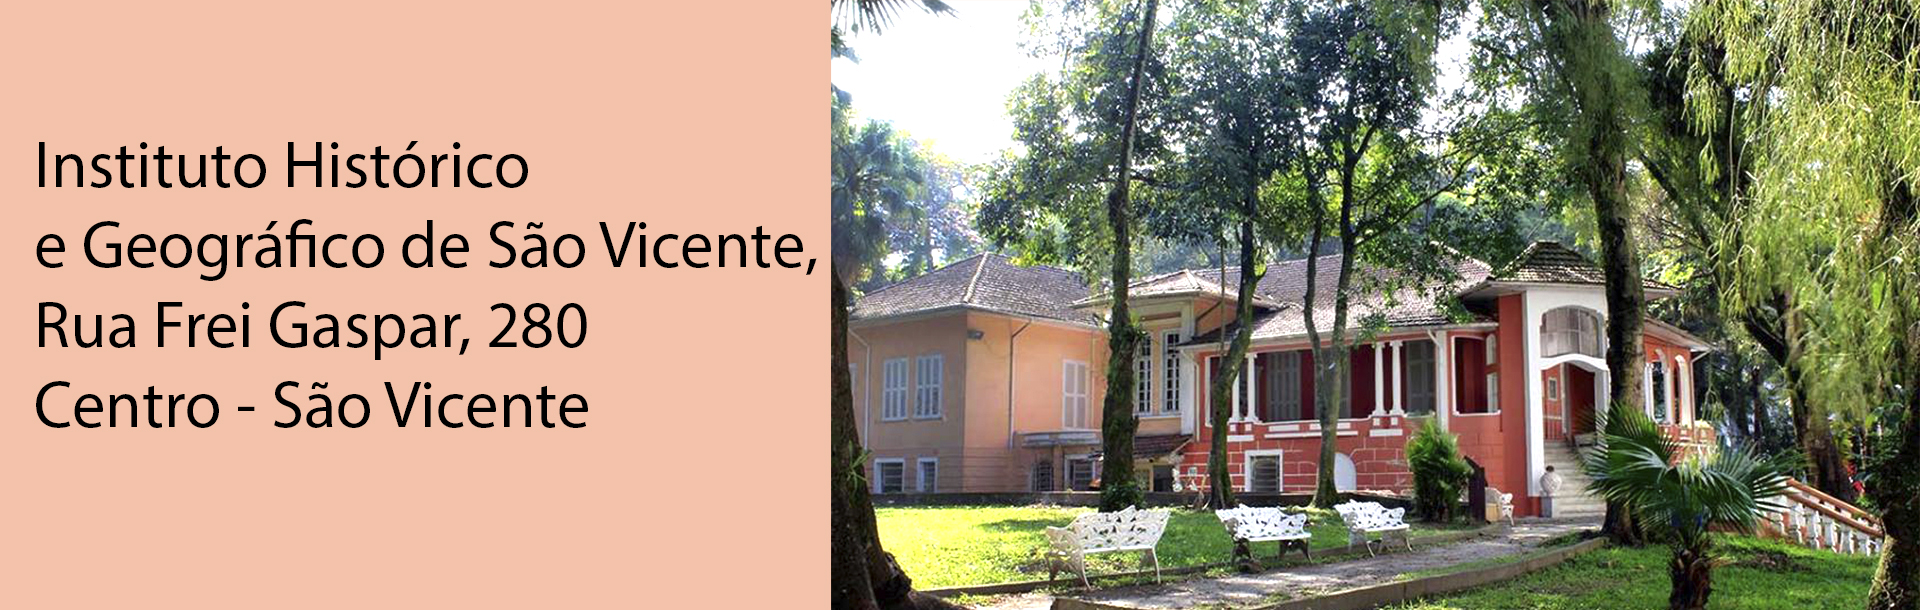 Instituto Histórico e Geográfico de São Vicente